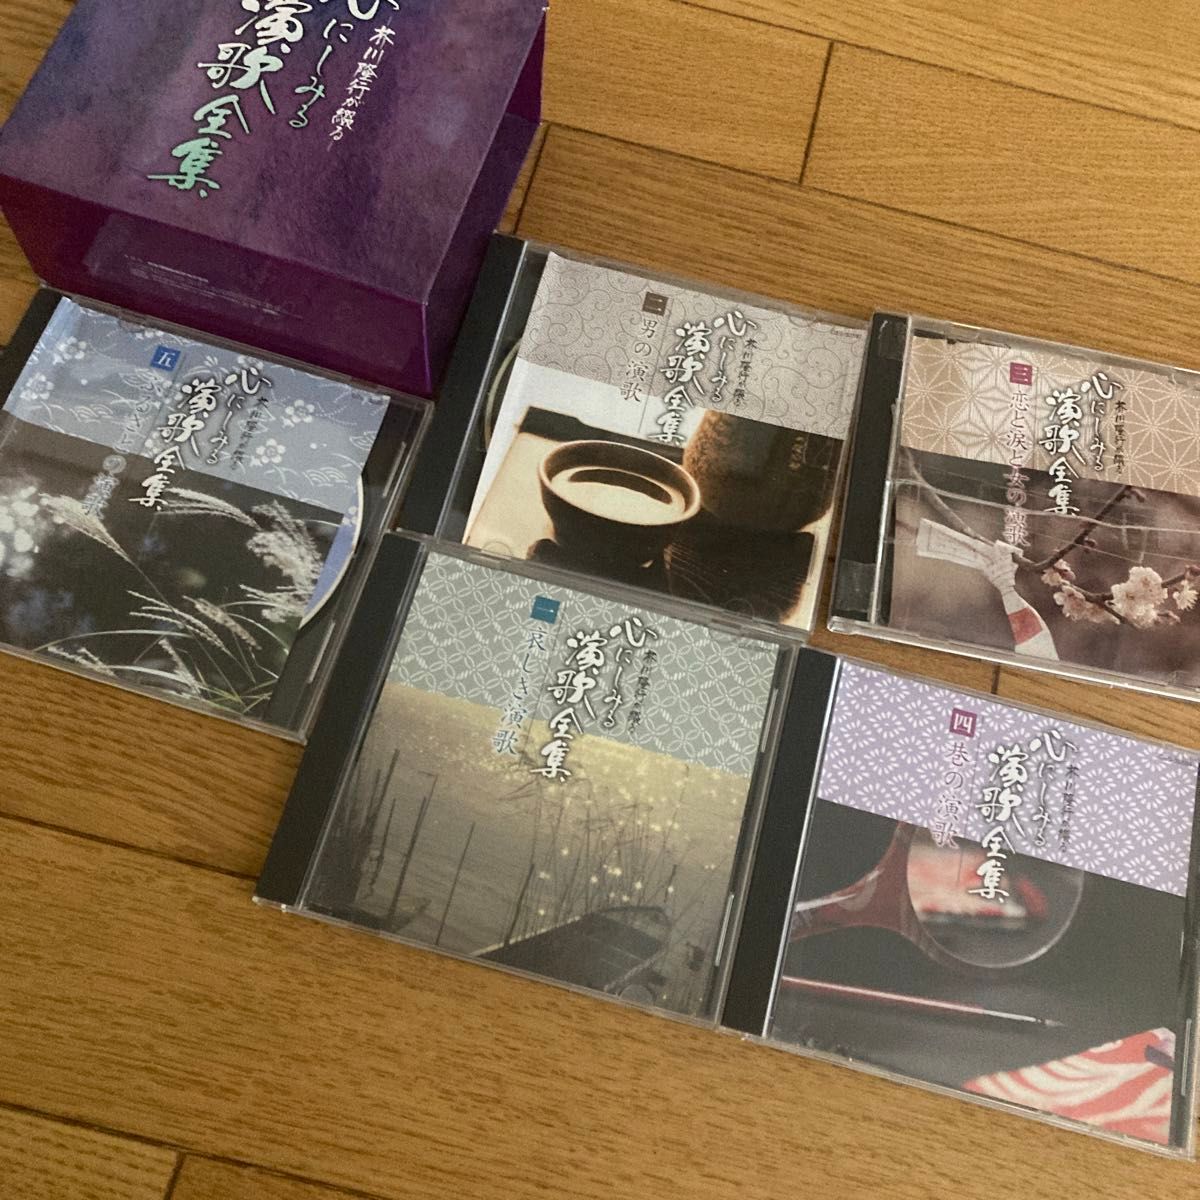  芥川隆行が綴る 心にしみる演歌全集 CD 5枚組 BOX